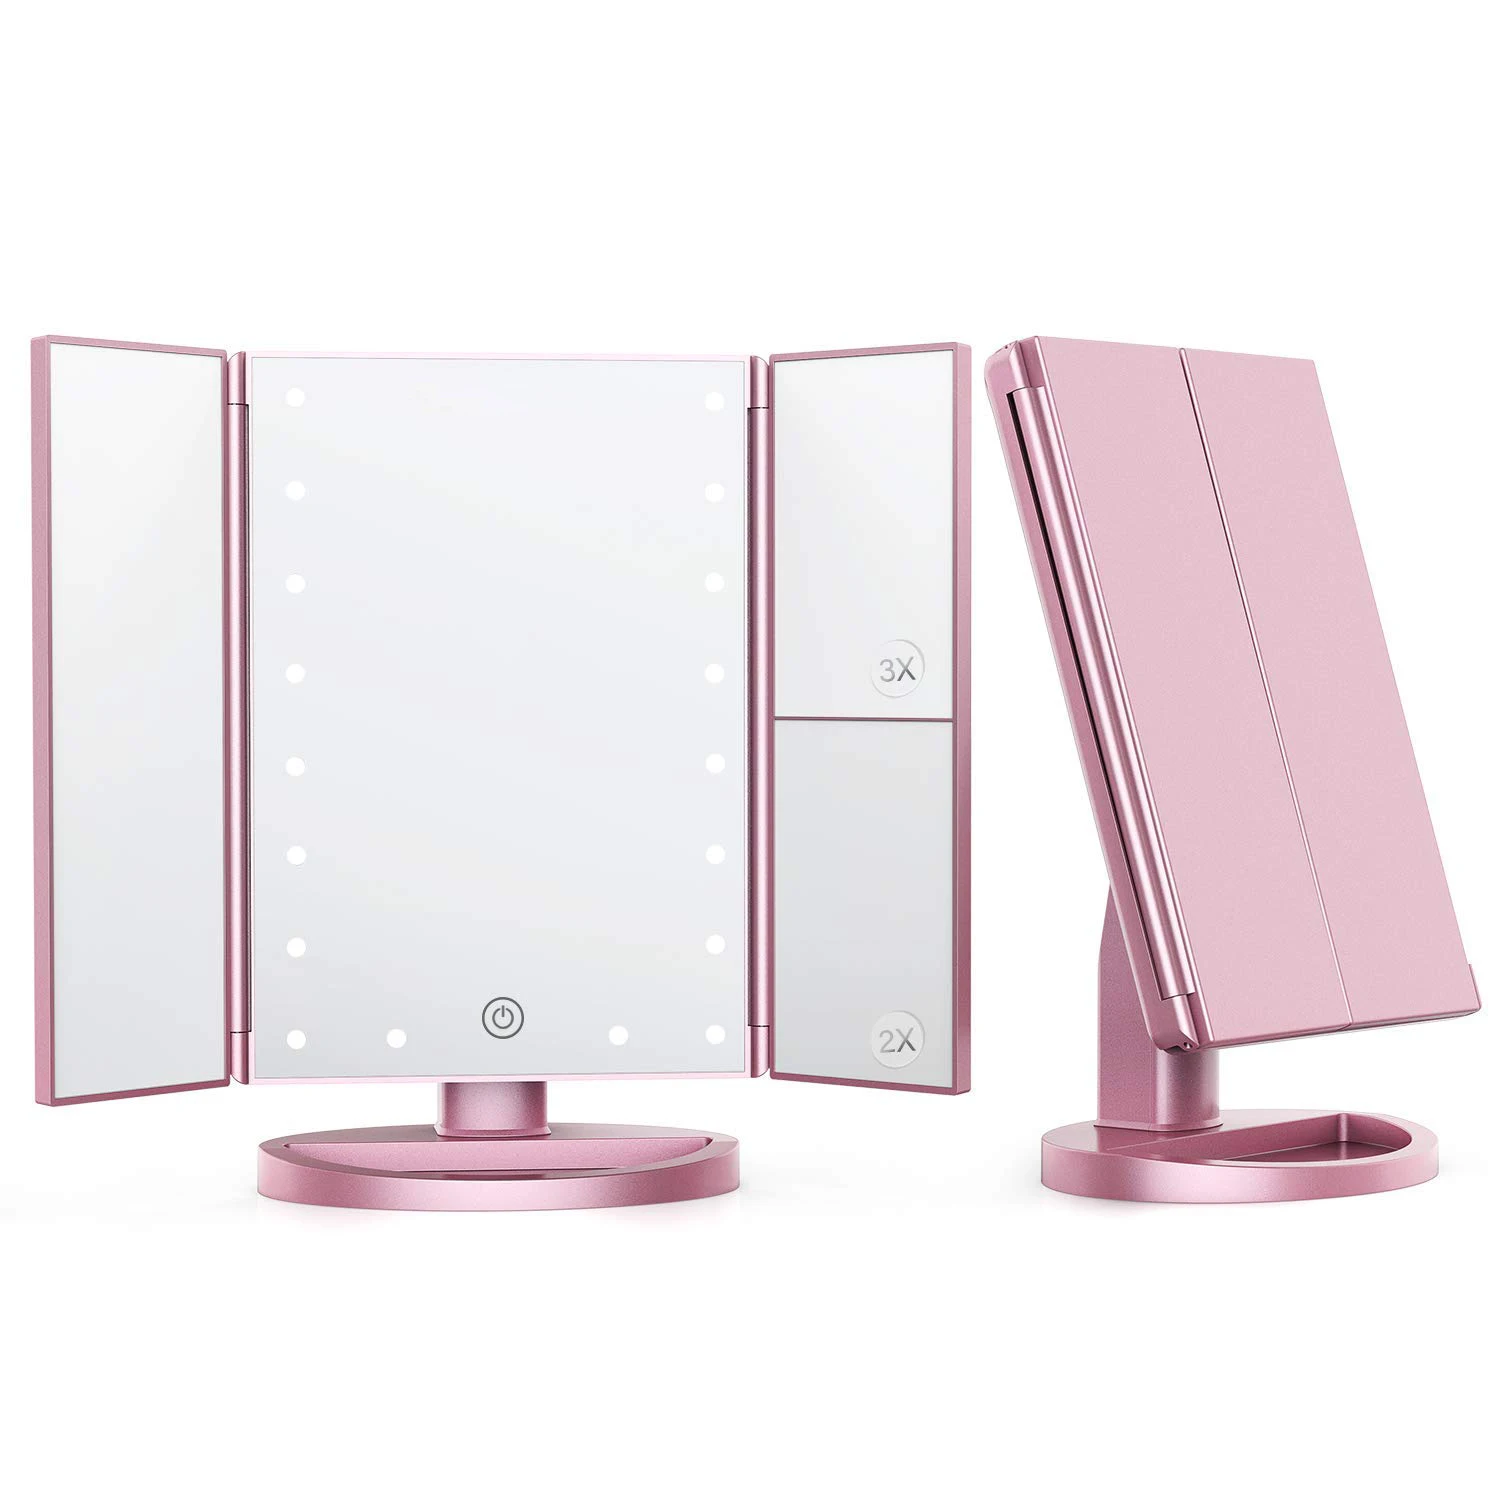 Kozmetik LED Ayna Makyaj OEM En Satış Trifold Vanity Işıklı USB Şarj Edilebilir Masa Üstü makyaj aynası